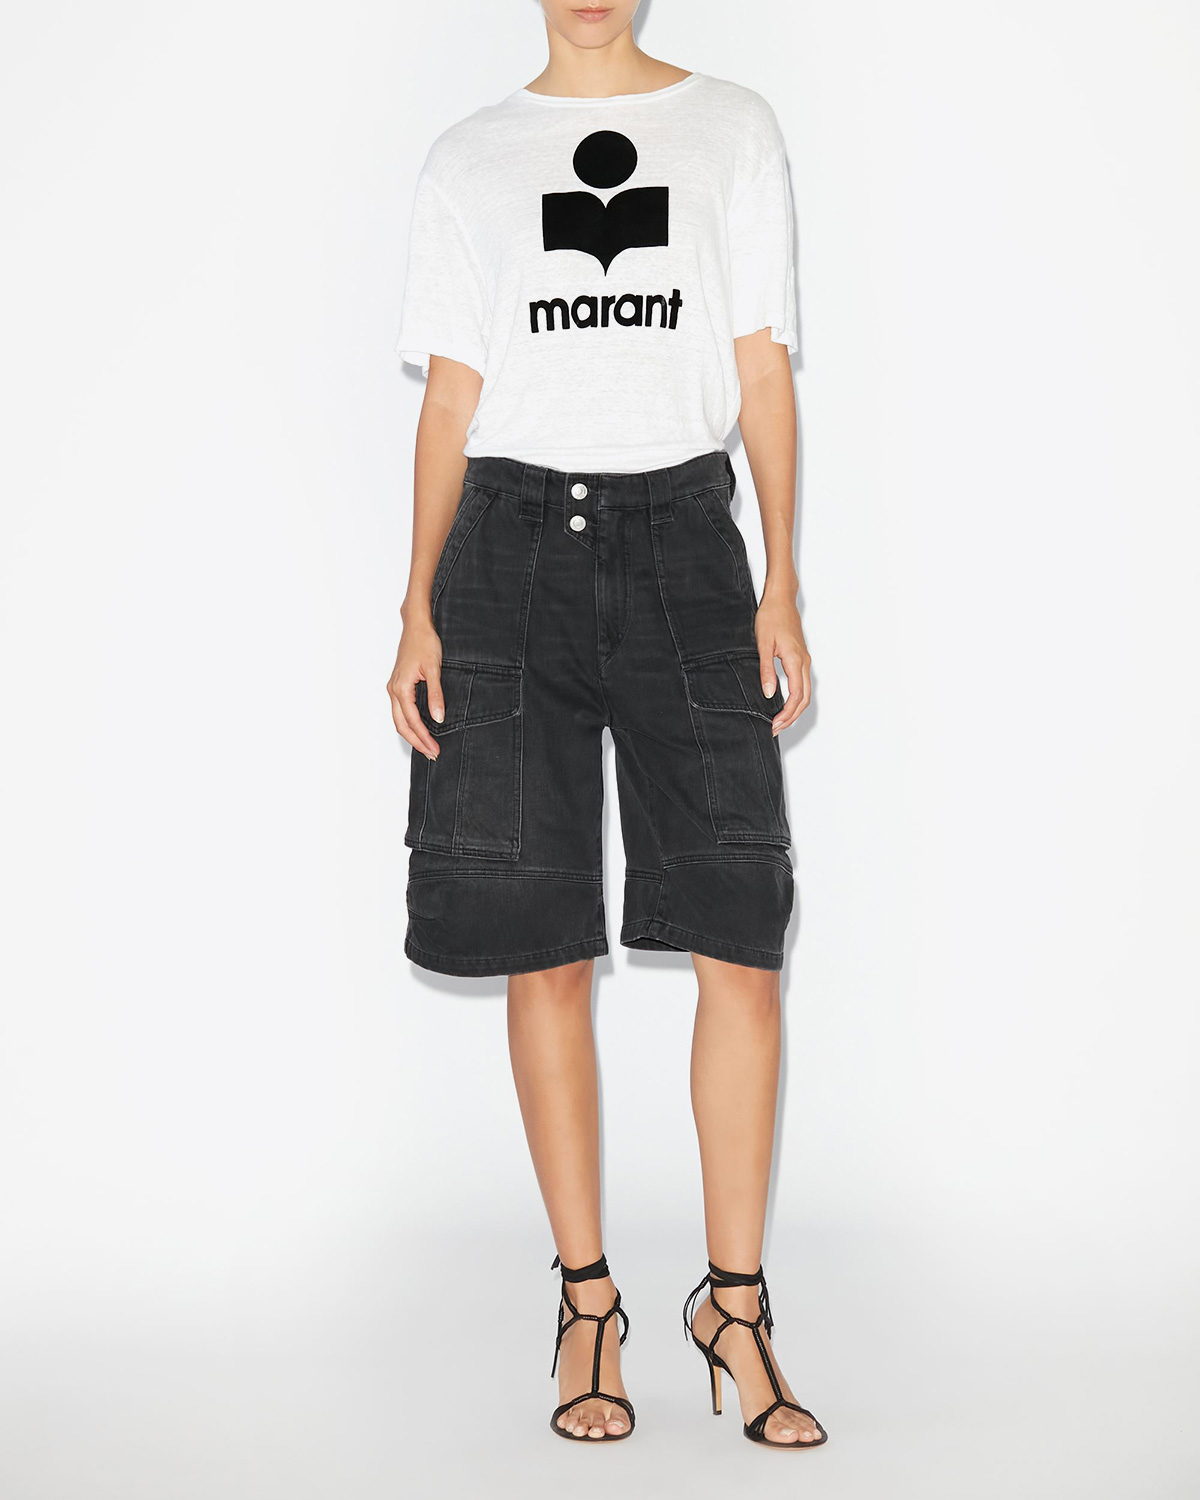 Tee-shirt manches courtes droit en lin blanc logo velours noir Marant Zewel Isabel Marant Etoile. Porté avec un bermuda noir.